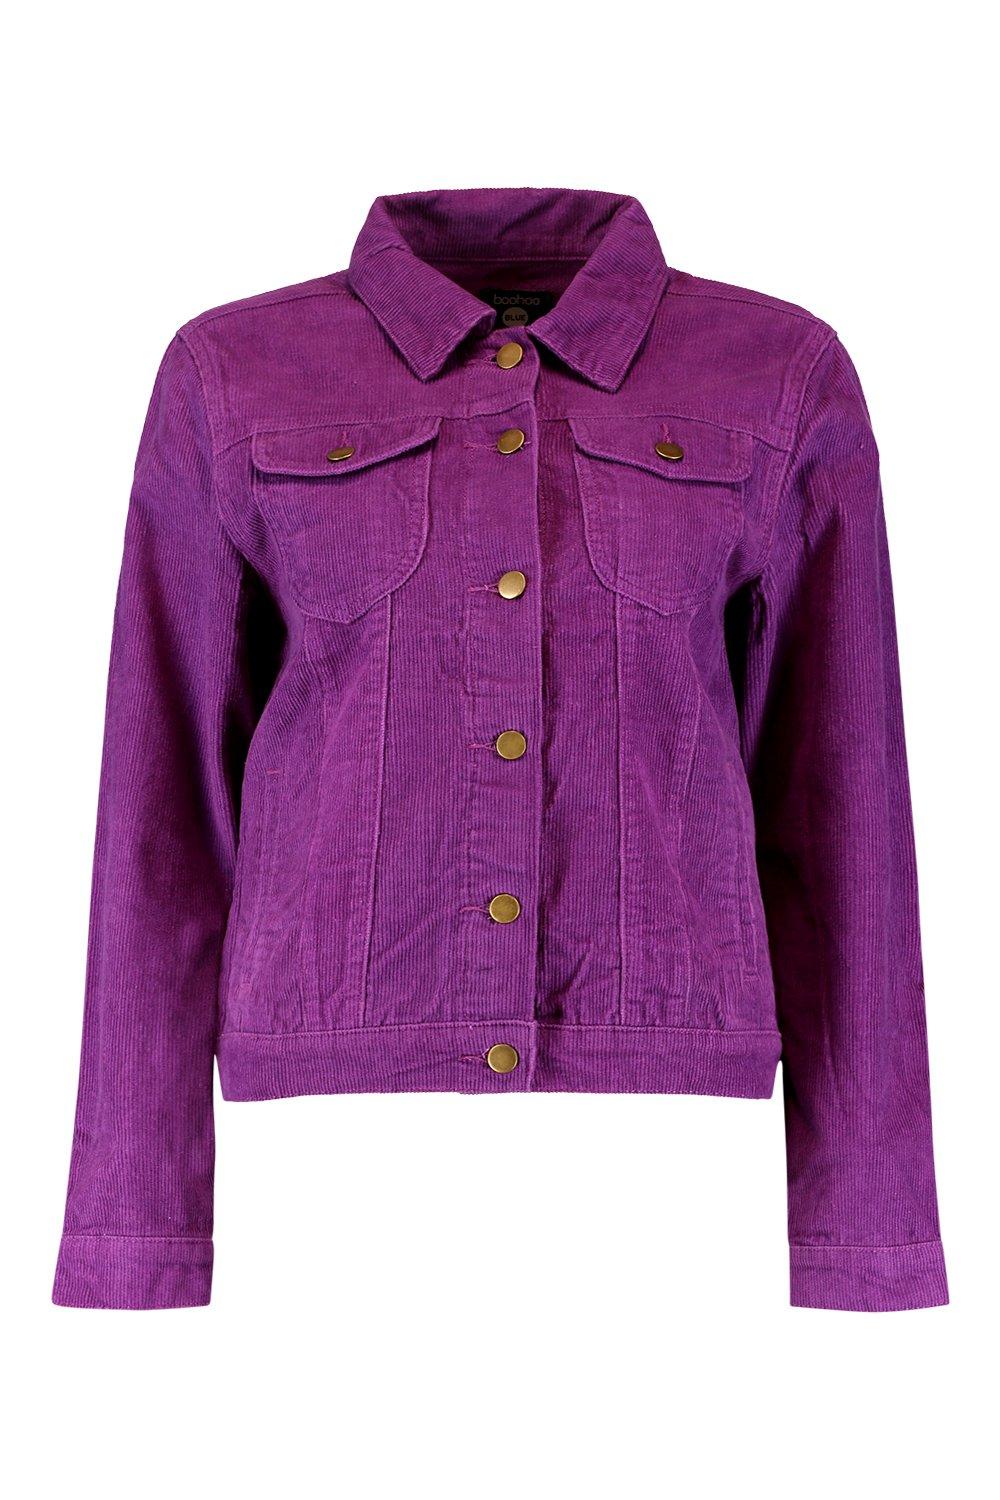 APair4uDesigns Purple Jean Jacket